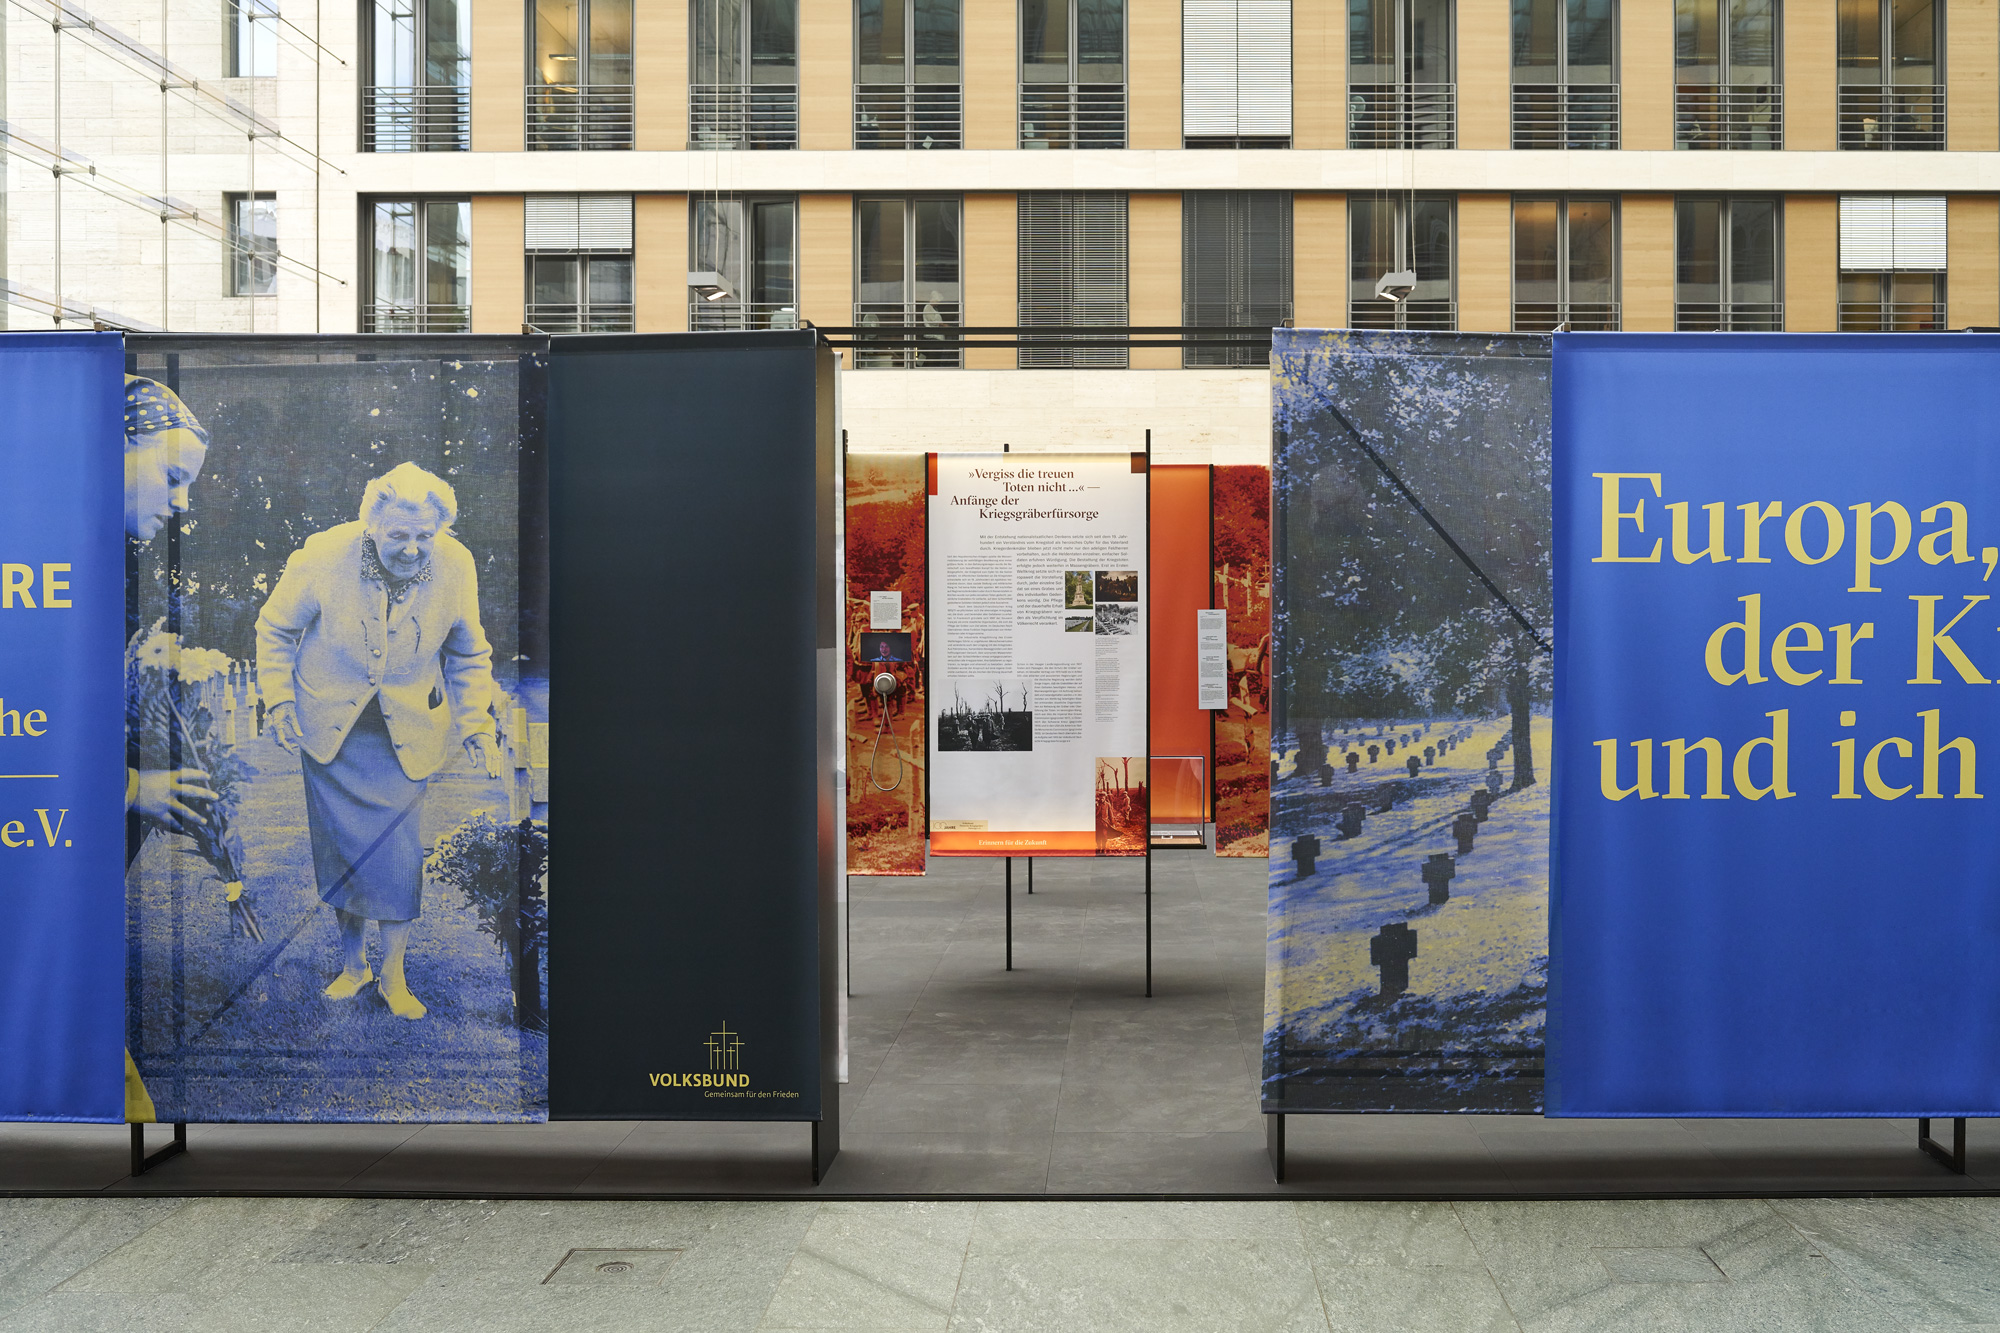 Mäder Haslbeck exhibition / Europa, der Krieg und Ich